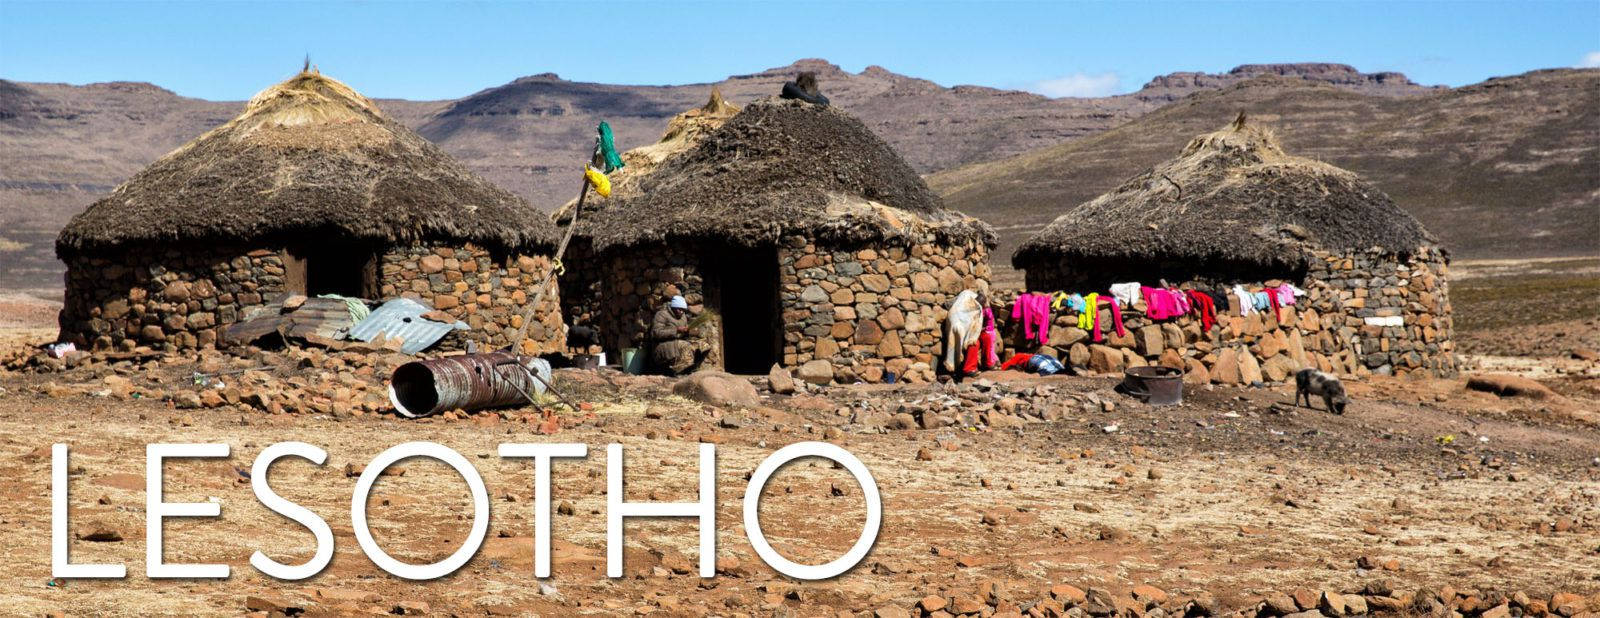 Lesotho 1600 X 618 Wallpaper